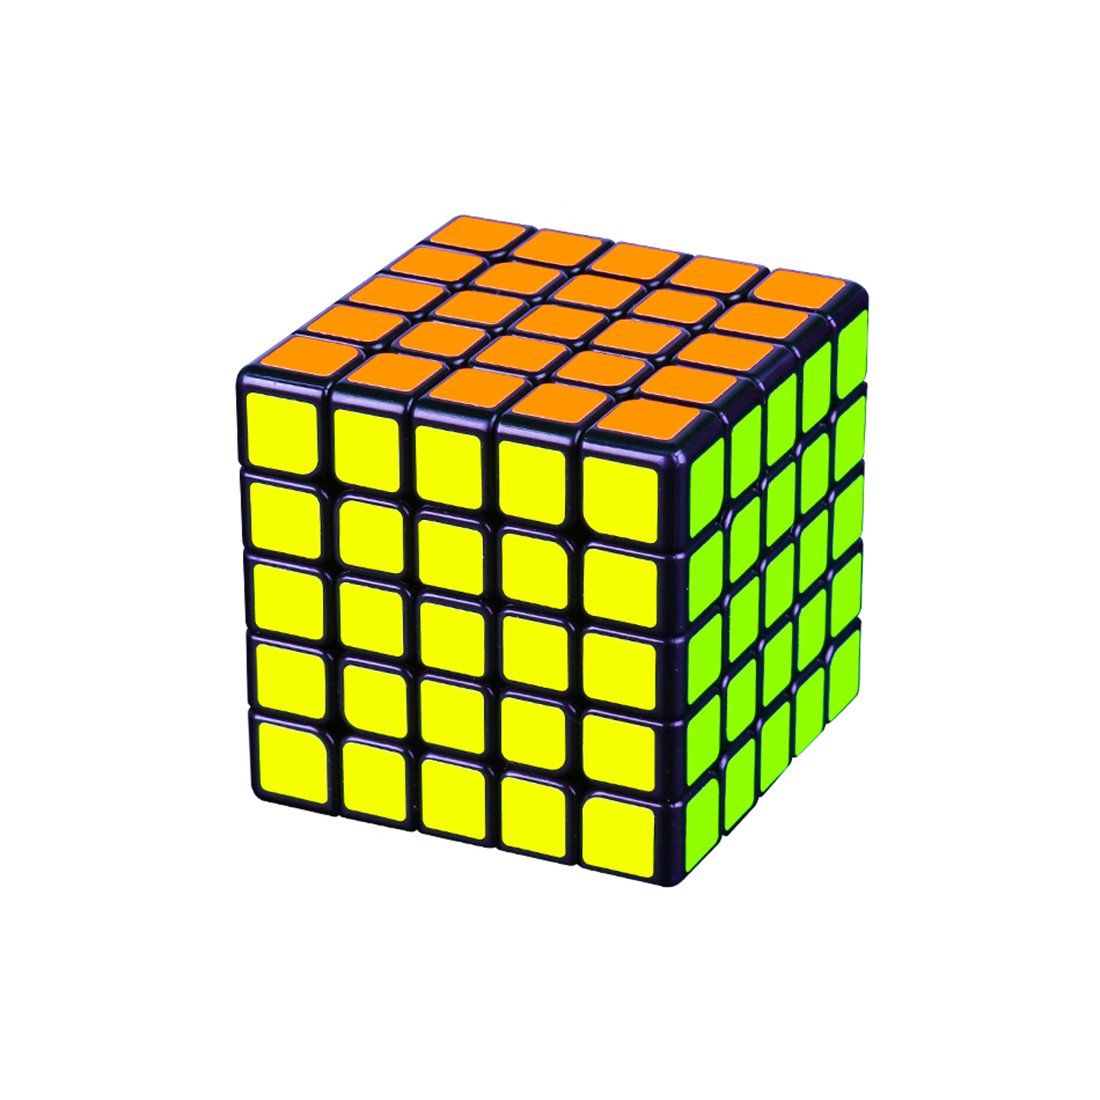 Yj8255 Moyu Aochuang Gts 5X5 Magic Cube Black